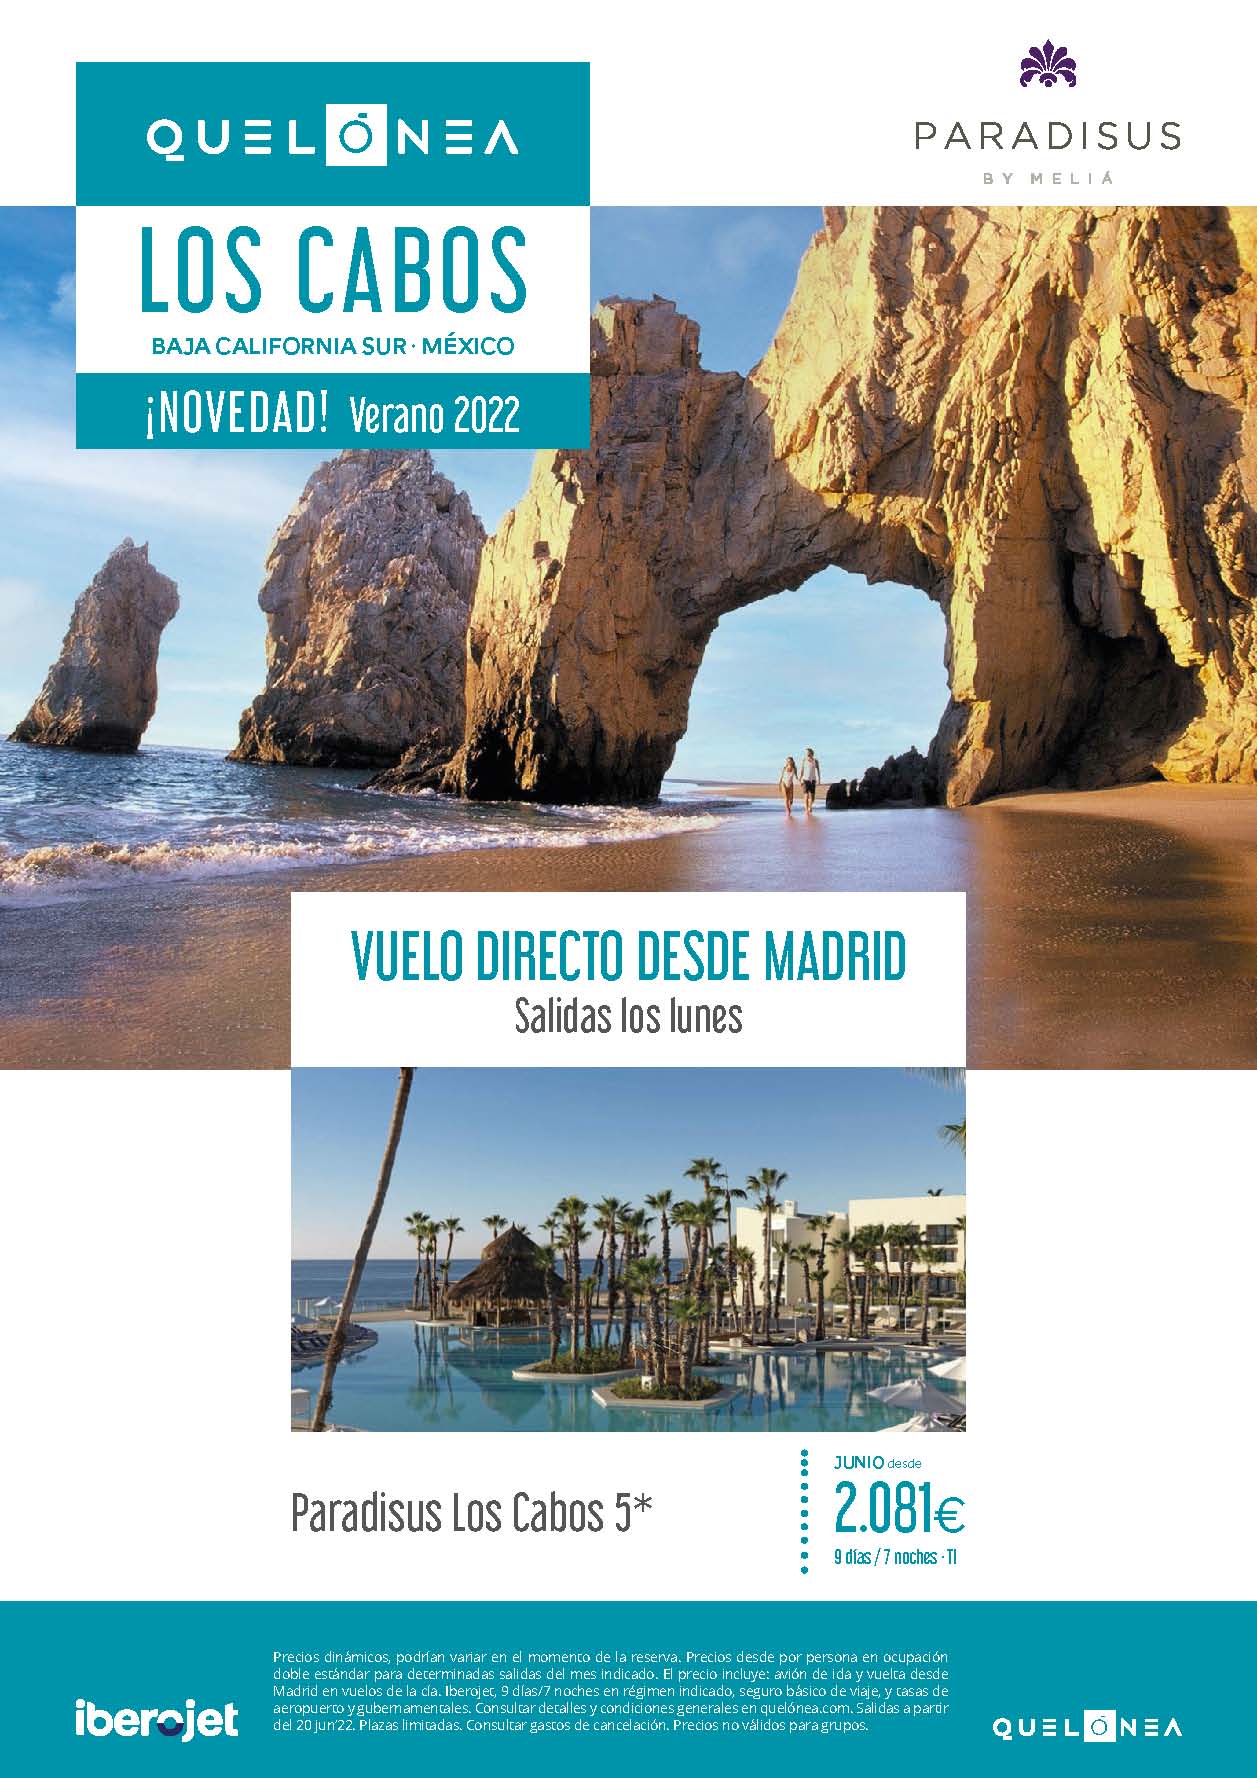 Oferta Quelonea Los Cabos Baja California Sur Mexico Verano 2022 9 dias Hotel Paradisus by Melia vuelo directo desde Madrid